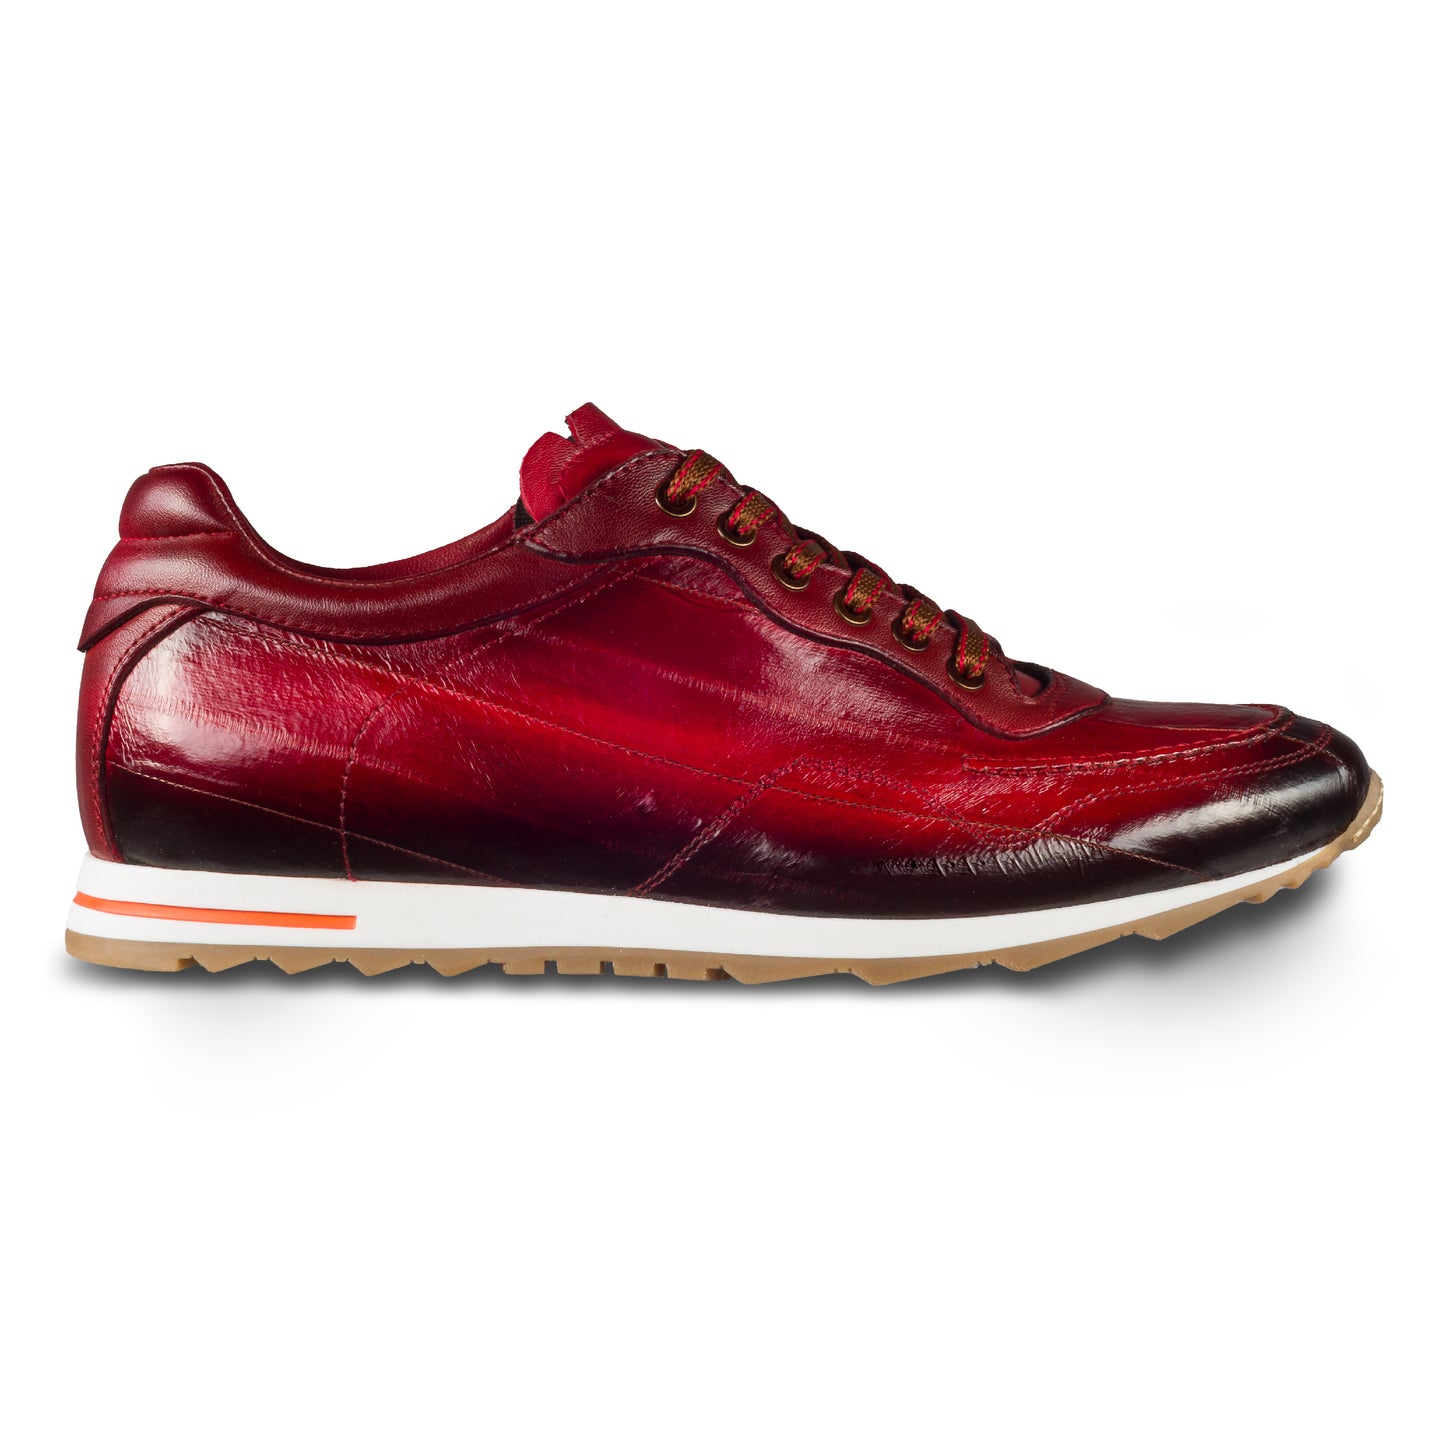 Lorenzi Herren Sneaker aus rotem Aal-Leder (Fischleder). Handgefertigt in Italien. Außenansicht rechter Schuh.